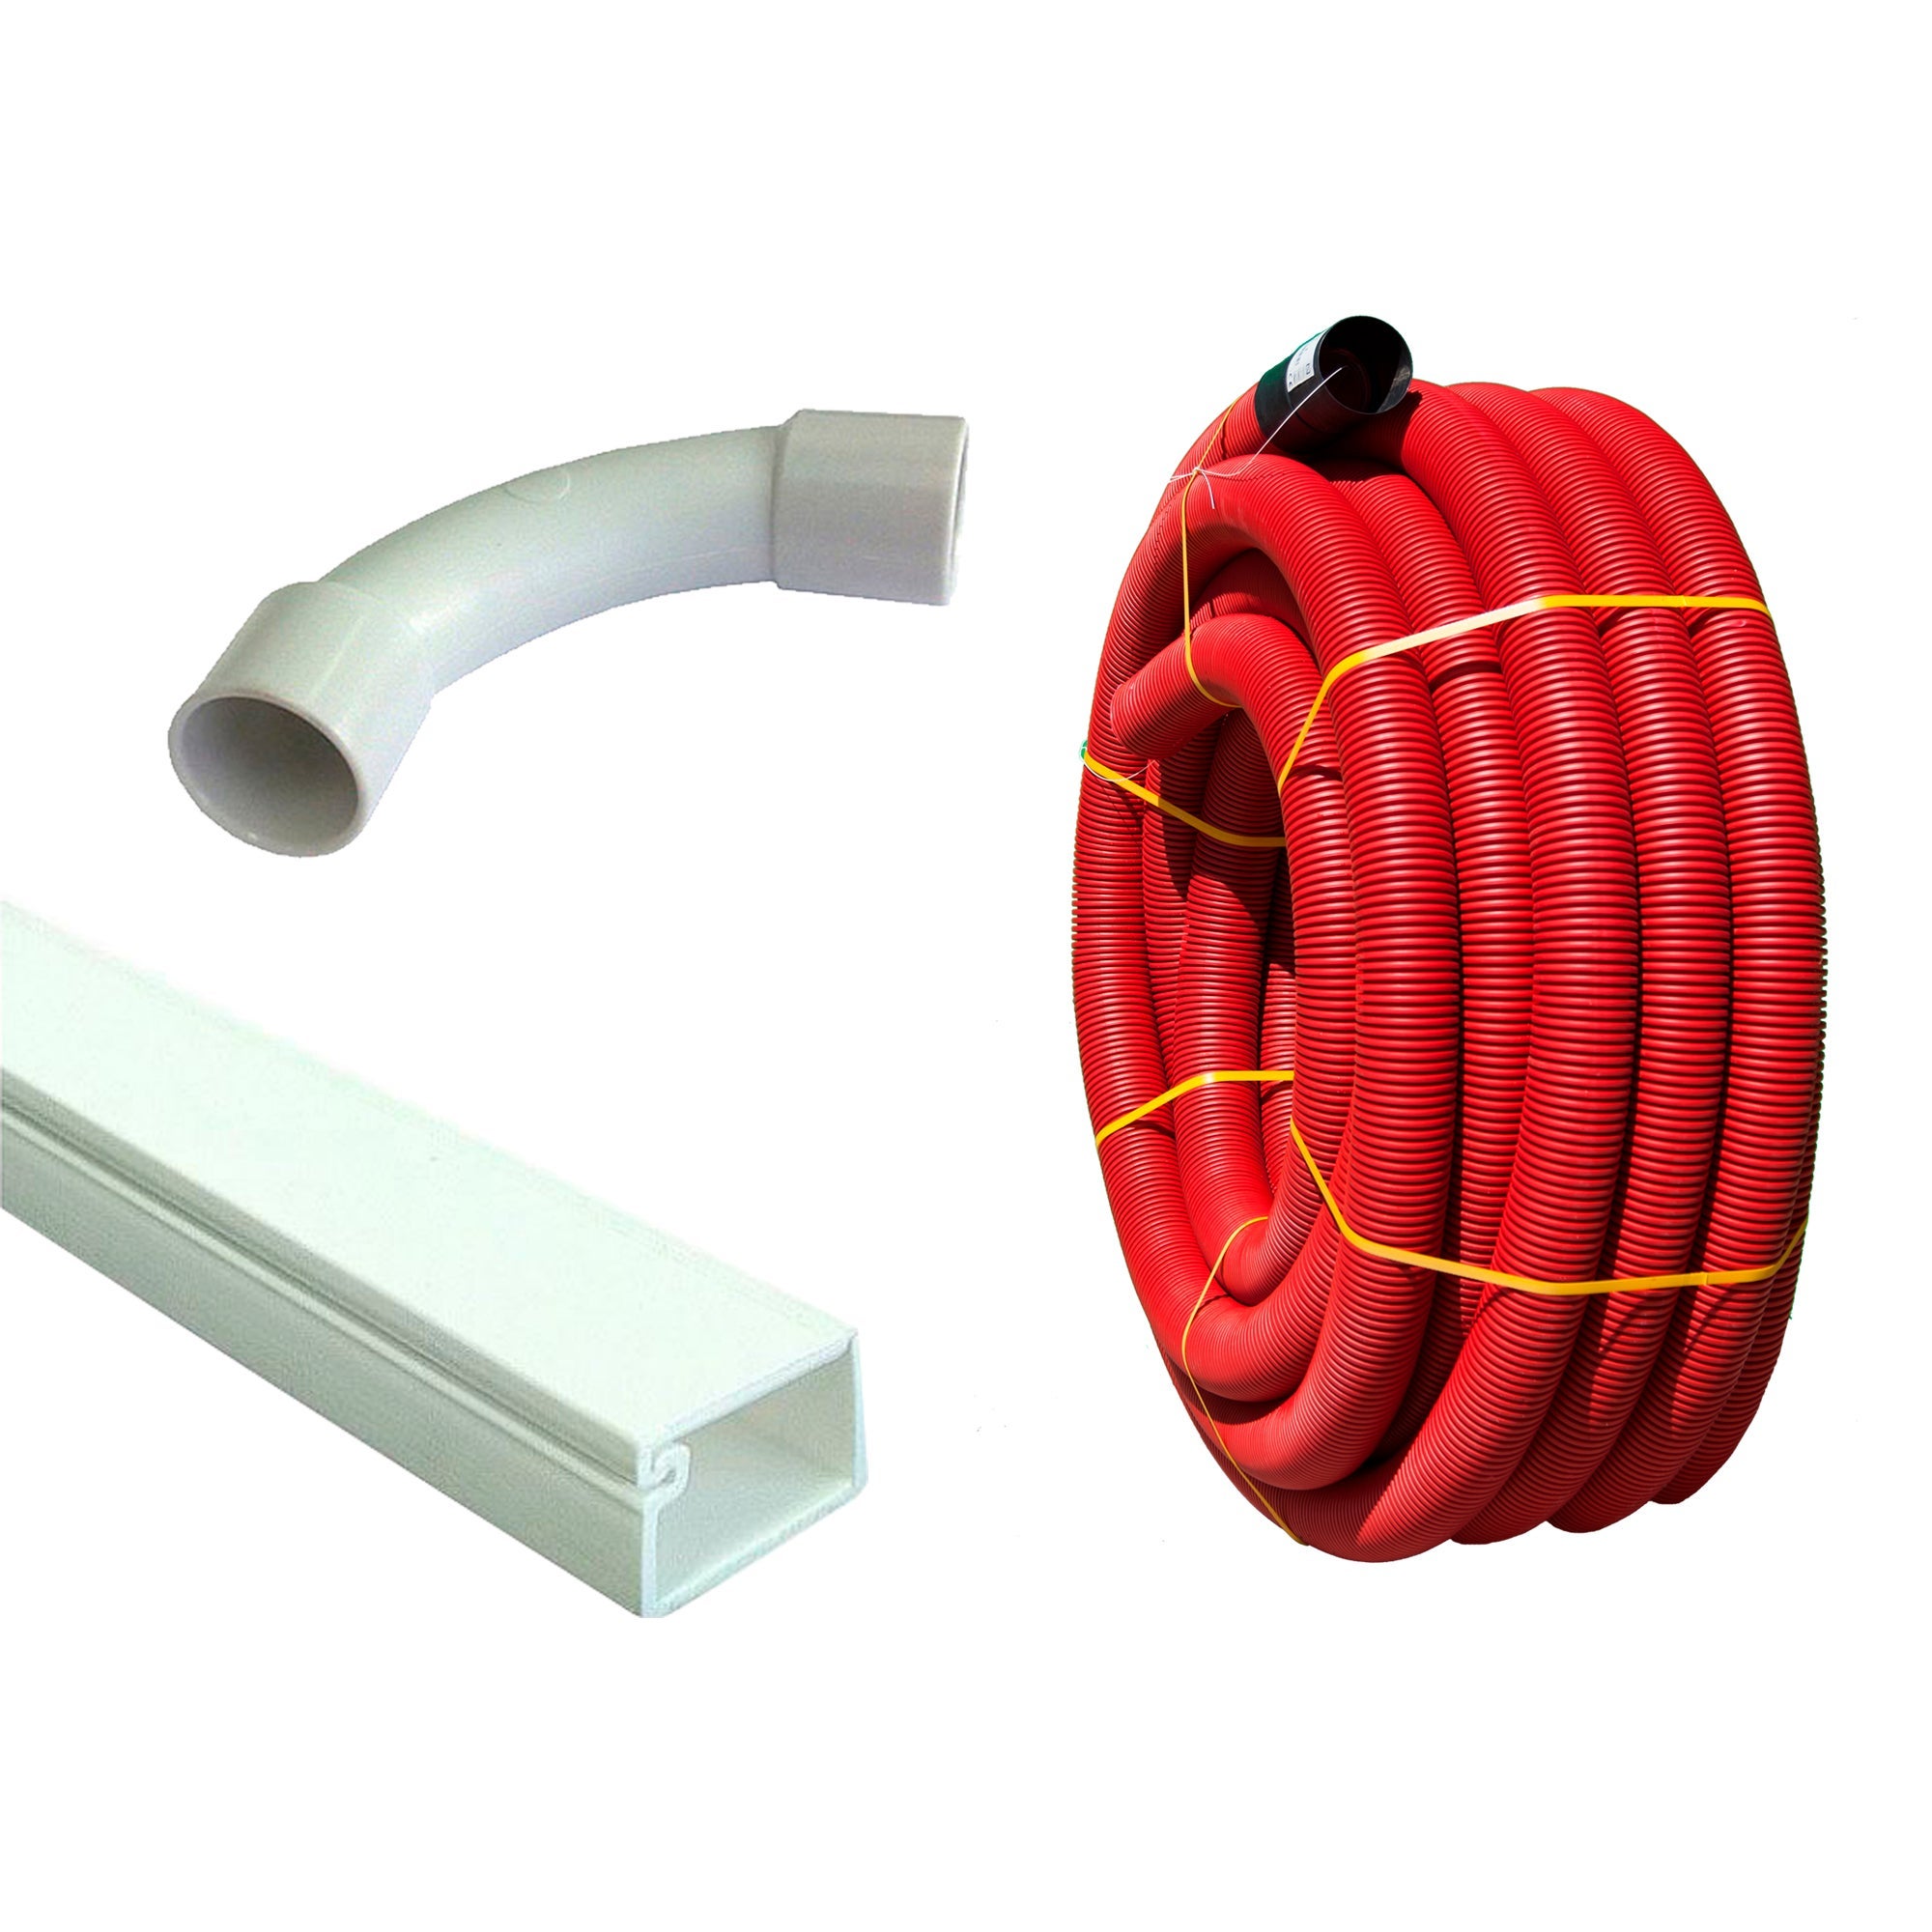 Calha passa-cabos em PVC rígido – Manutan 